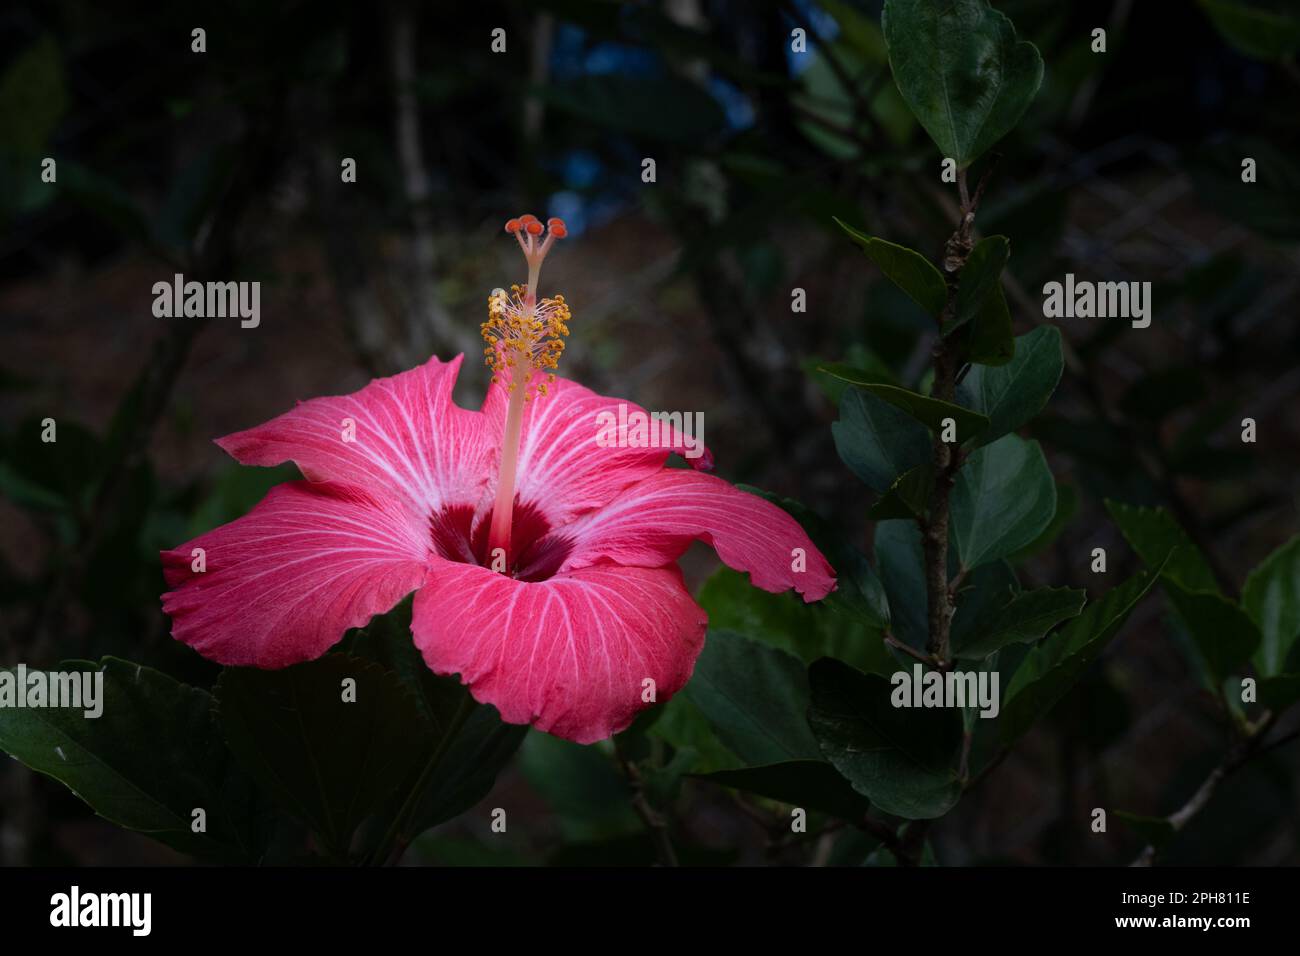 Fiore di ibisco, rosso, visto di lato, che mette in risalto lo stamen e i pistils delle strutture riproduttive, rosa-sinensis con copy-space Foto Stock